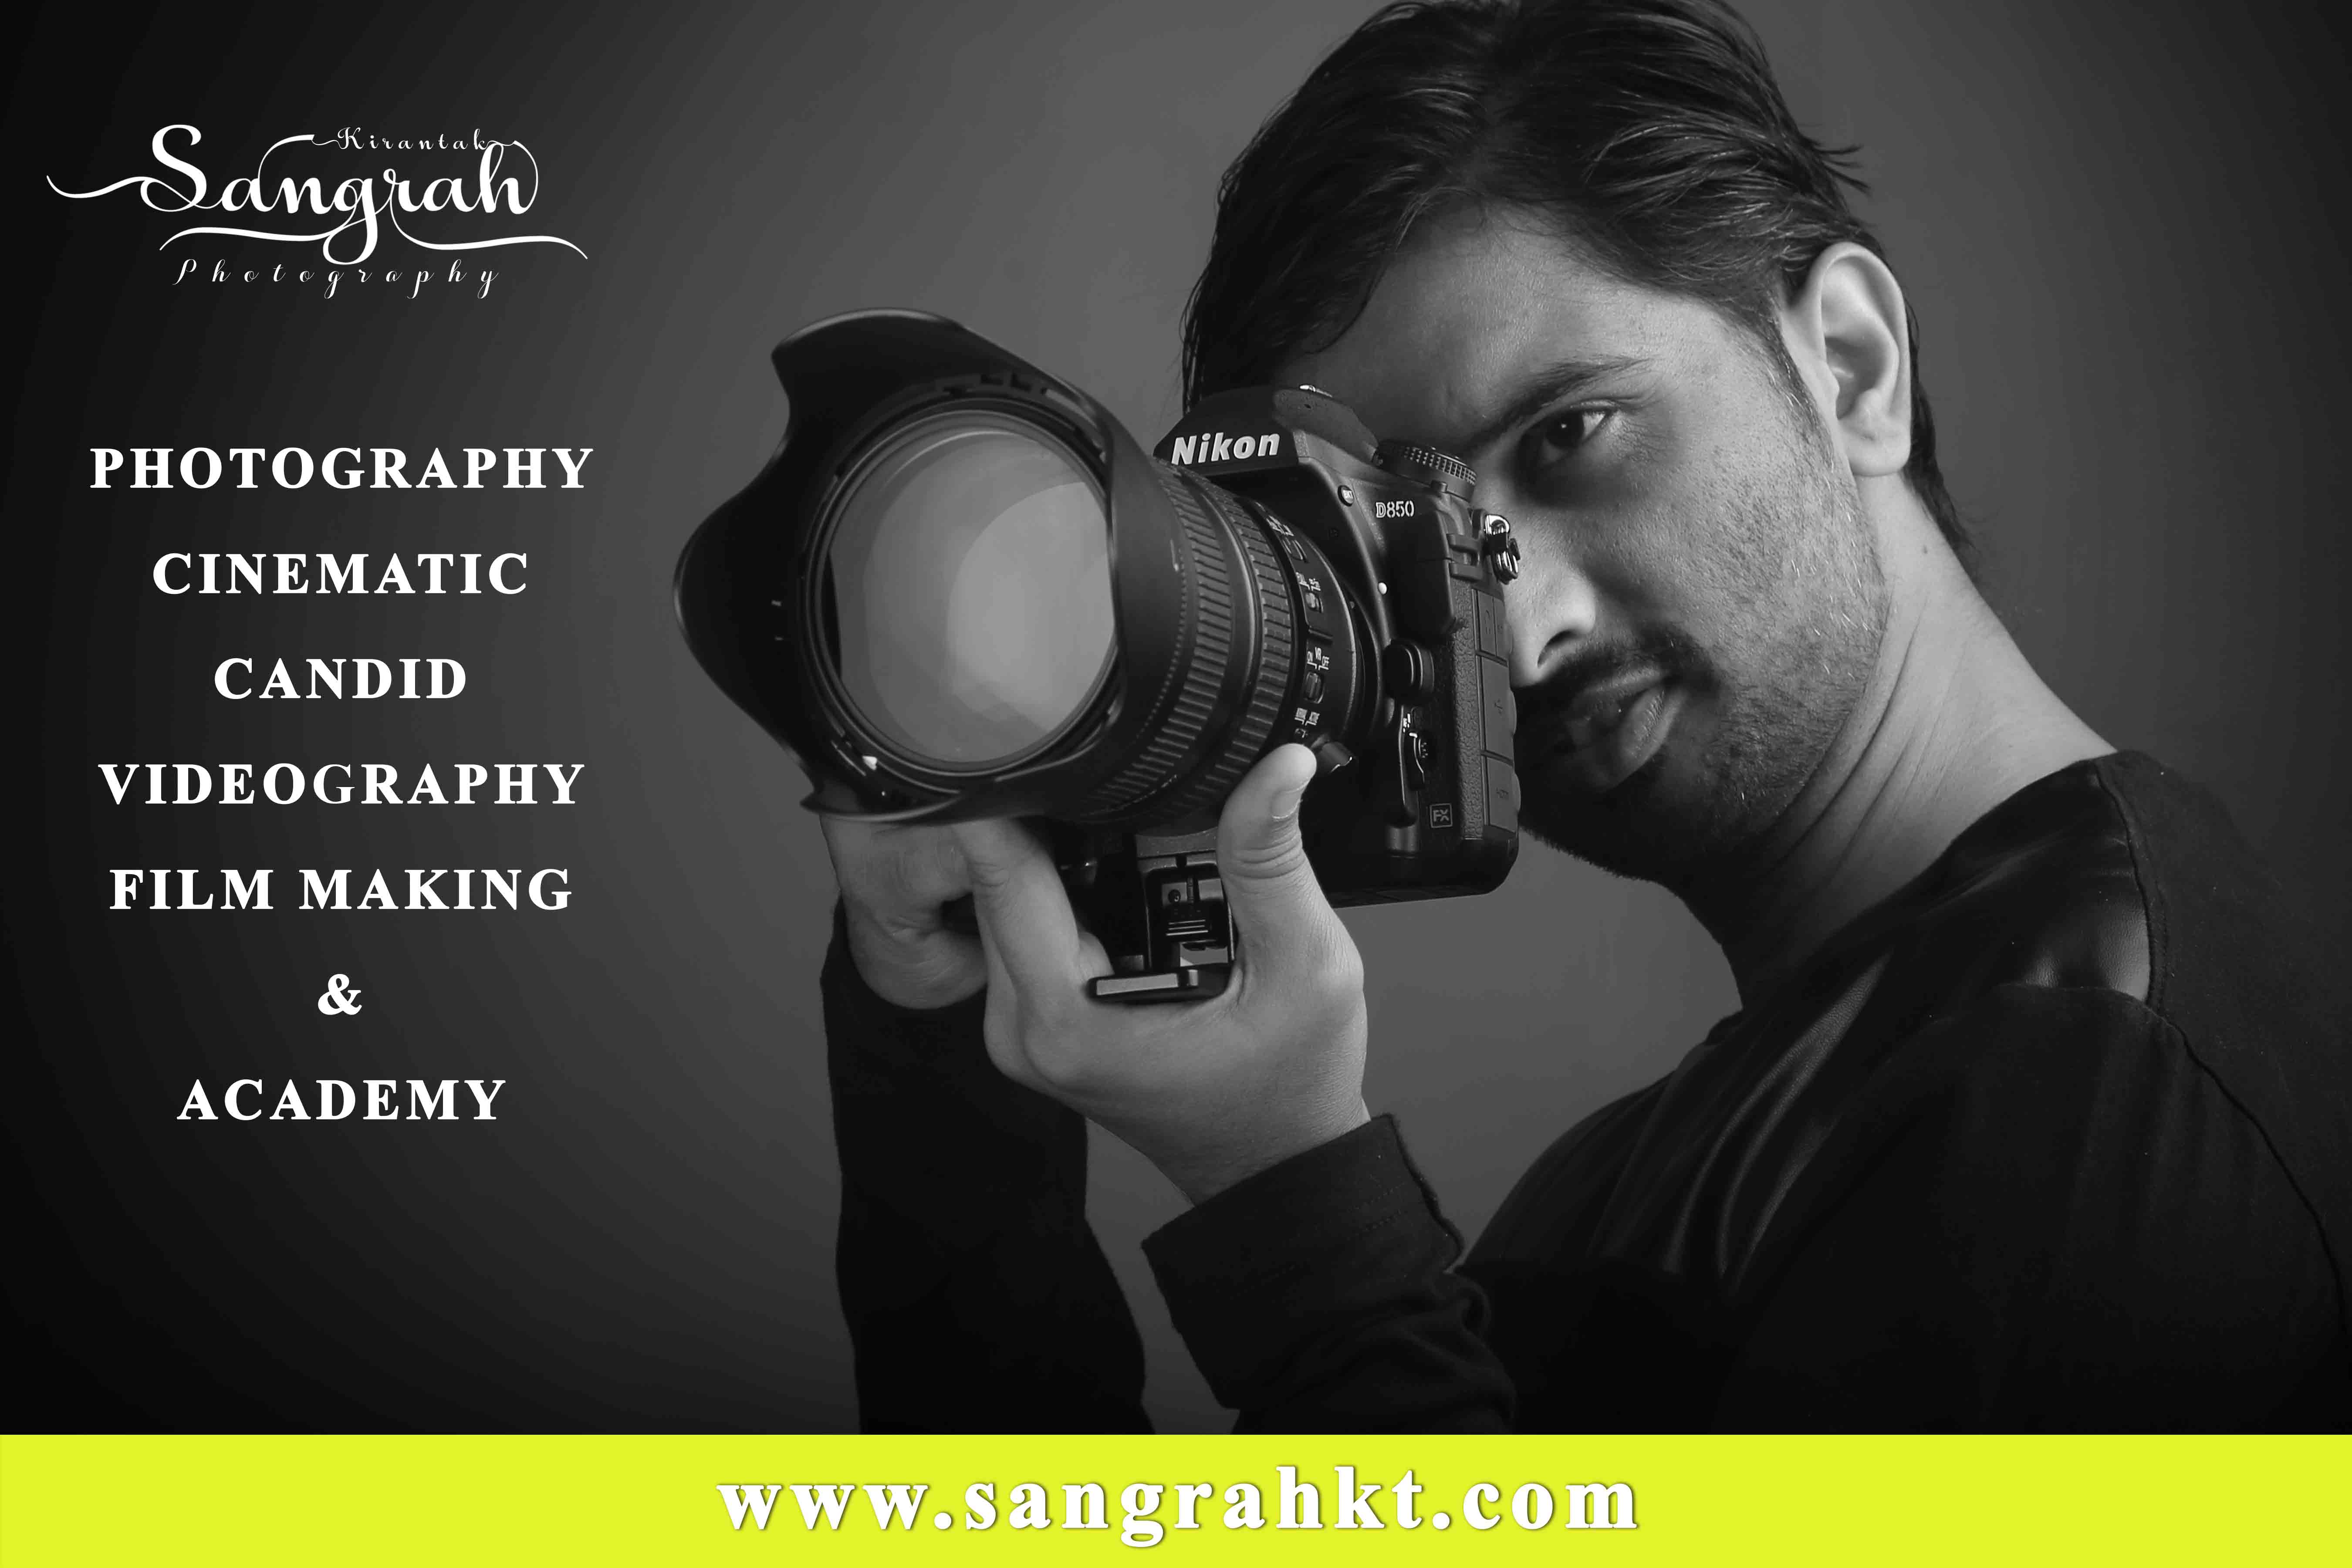 Sangrah Photographics & Academy